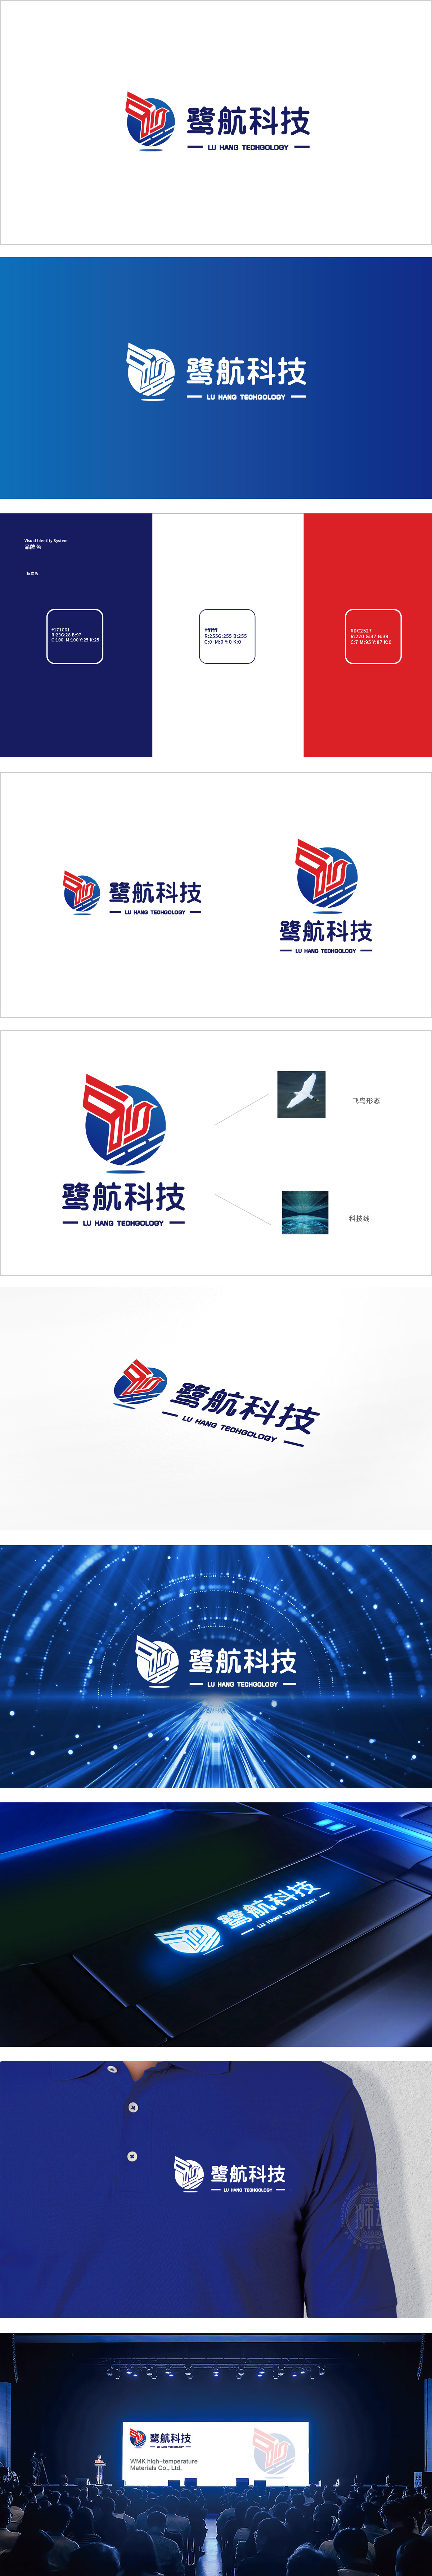 上海鹭航科技有限公司车船航空器制造LOGO设计